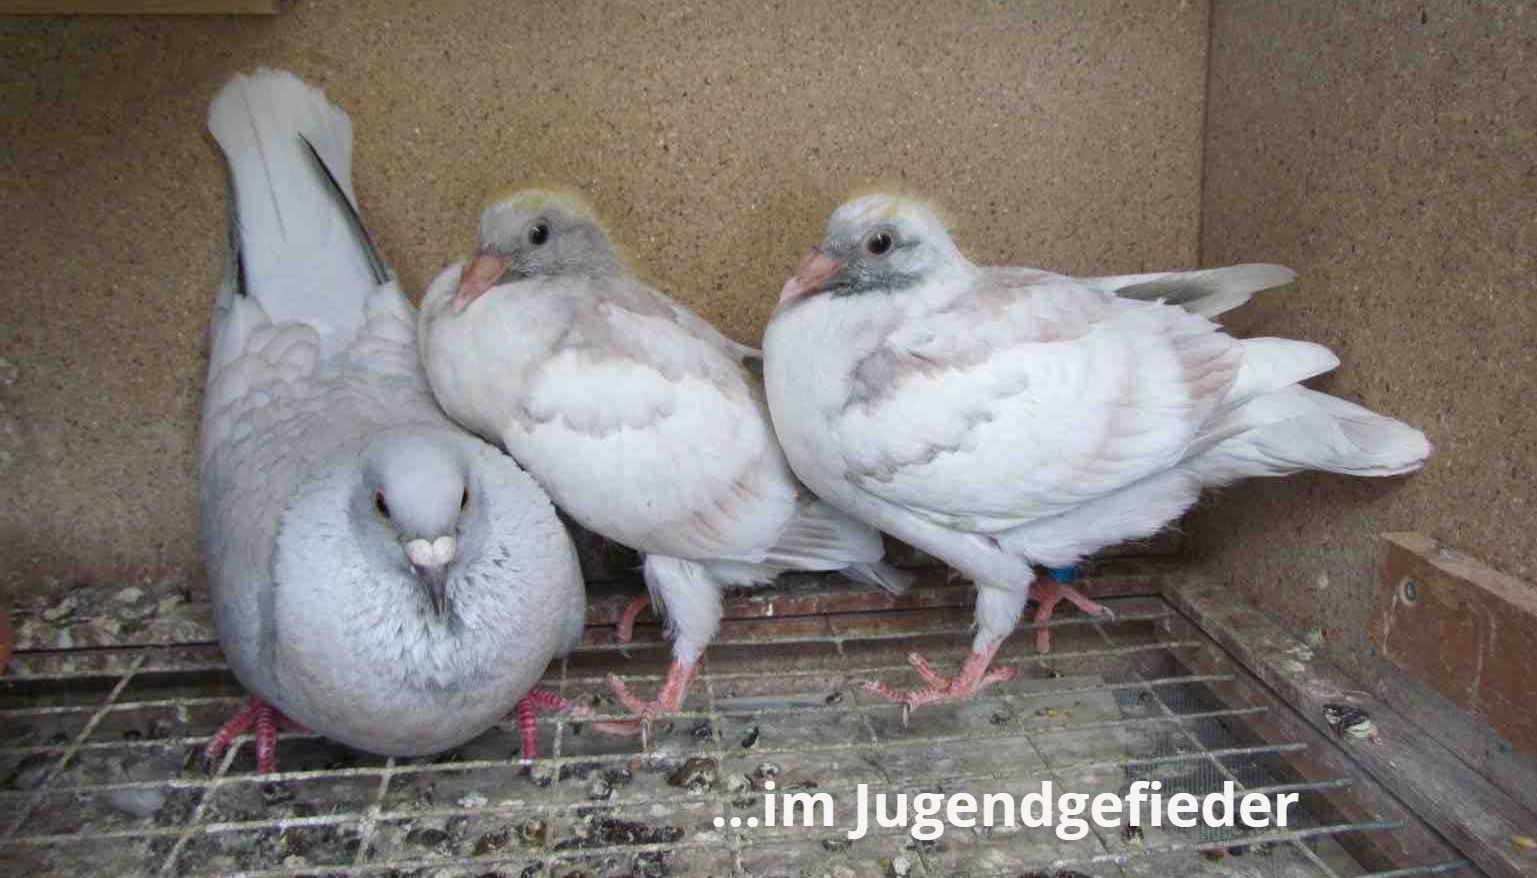 Rubella racing pigeons, reduced brieftauben, reduced kleurpostduiven